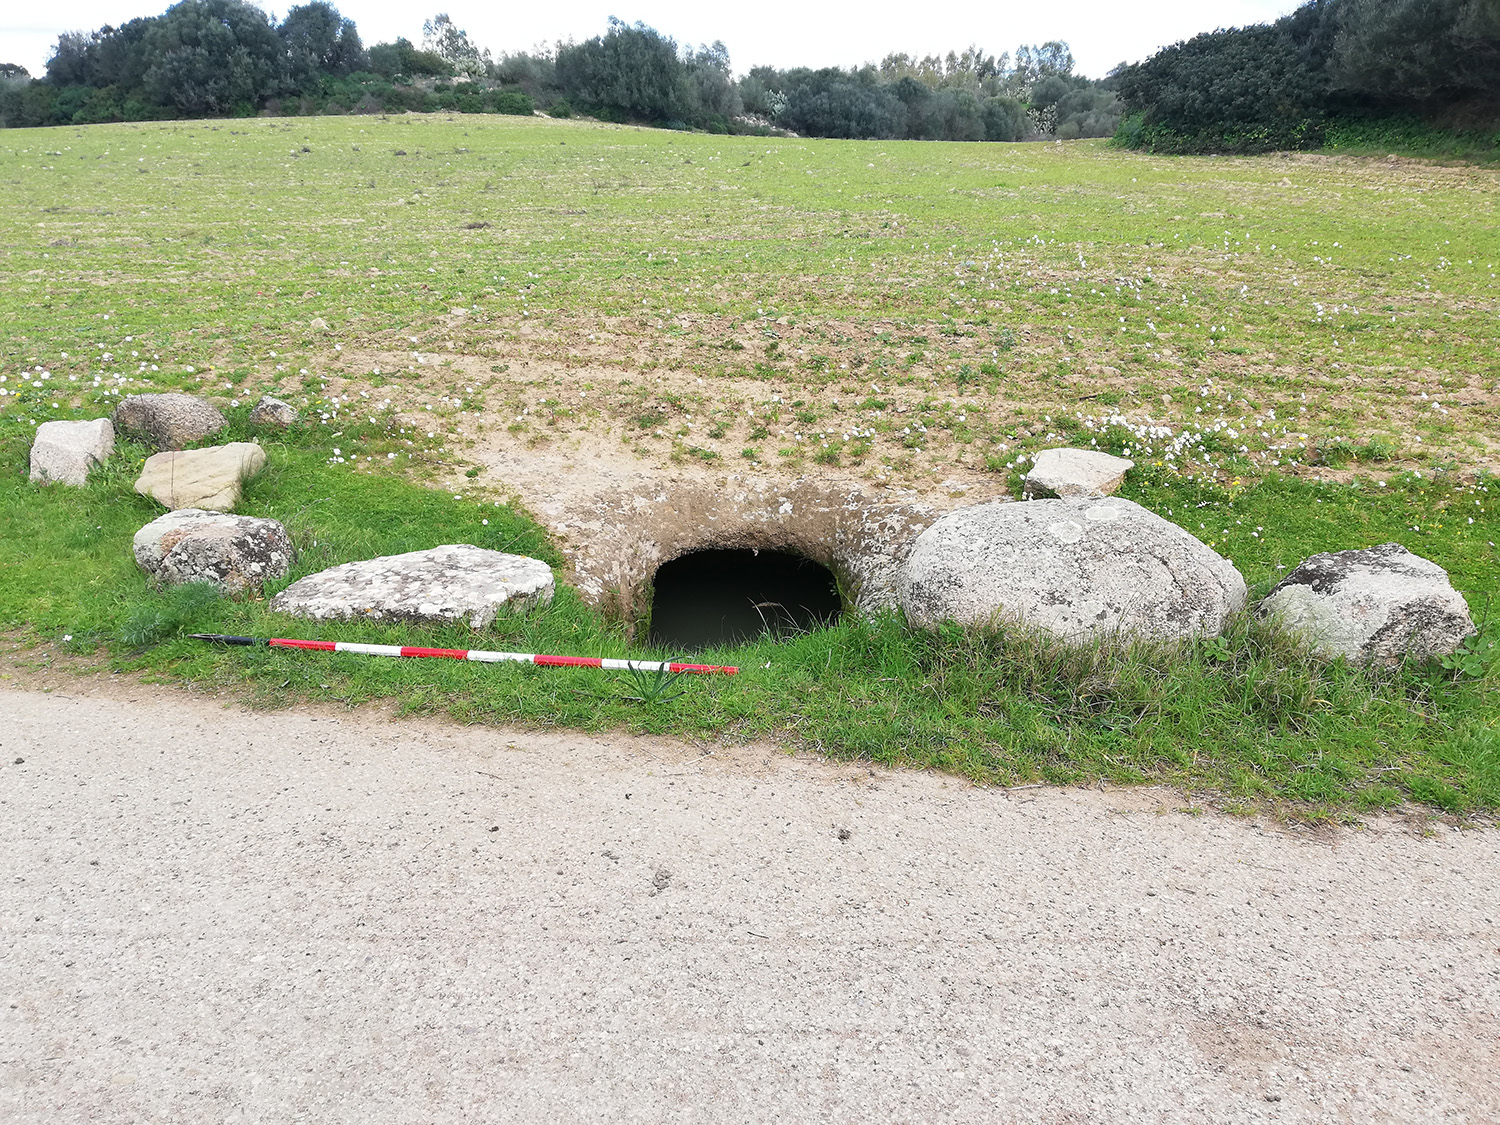 Domus de janas Corongiu II (tomba rupestre, area ad uso funerario) - Pimentel (SU)  (PERIODIZZAZIONI/ Preistoria/ Neolitico)